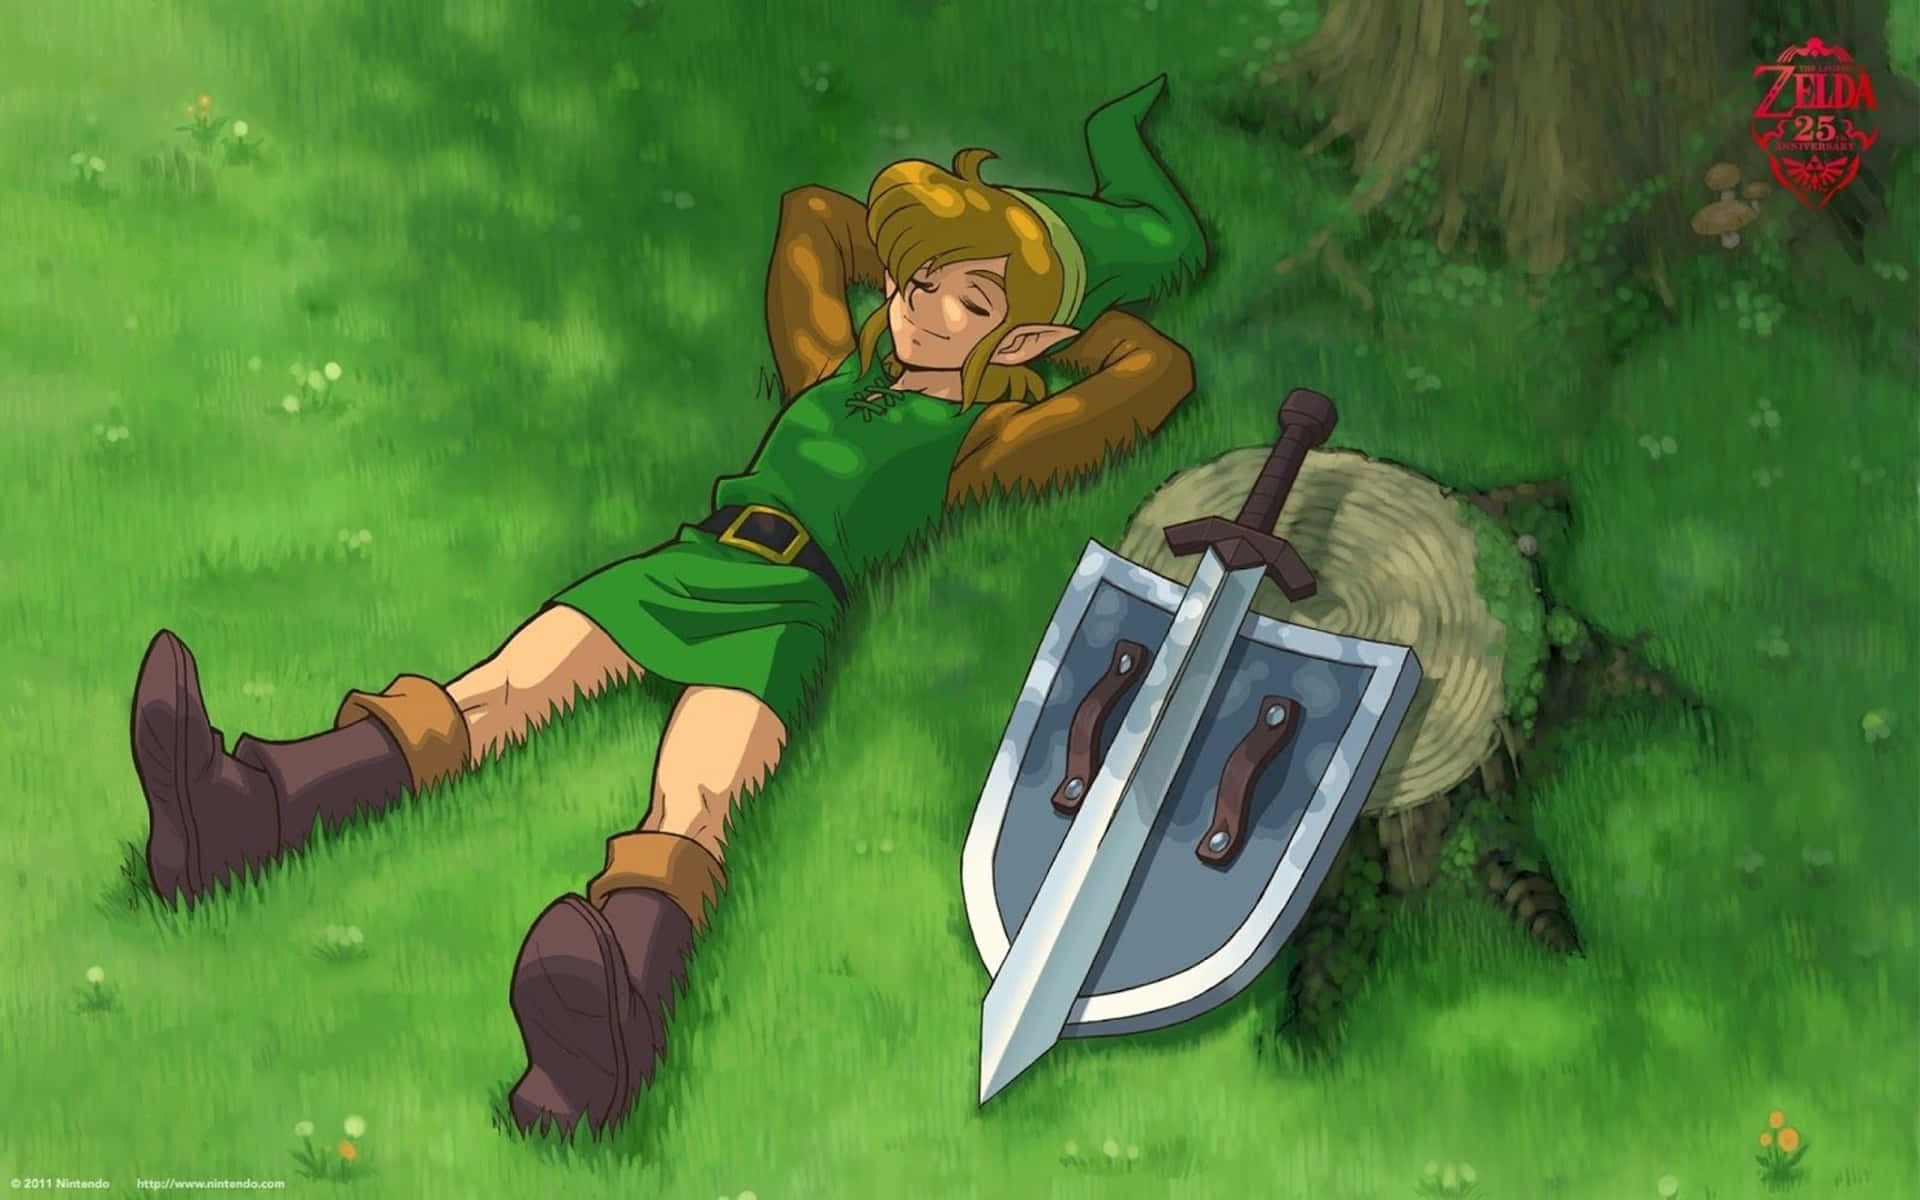 Link Captures the Beauty of Hyrule in Zelda Breath of the Wild 4K Wallpaper